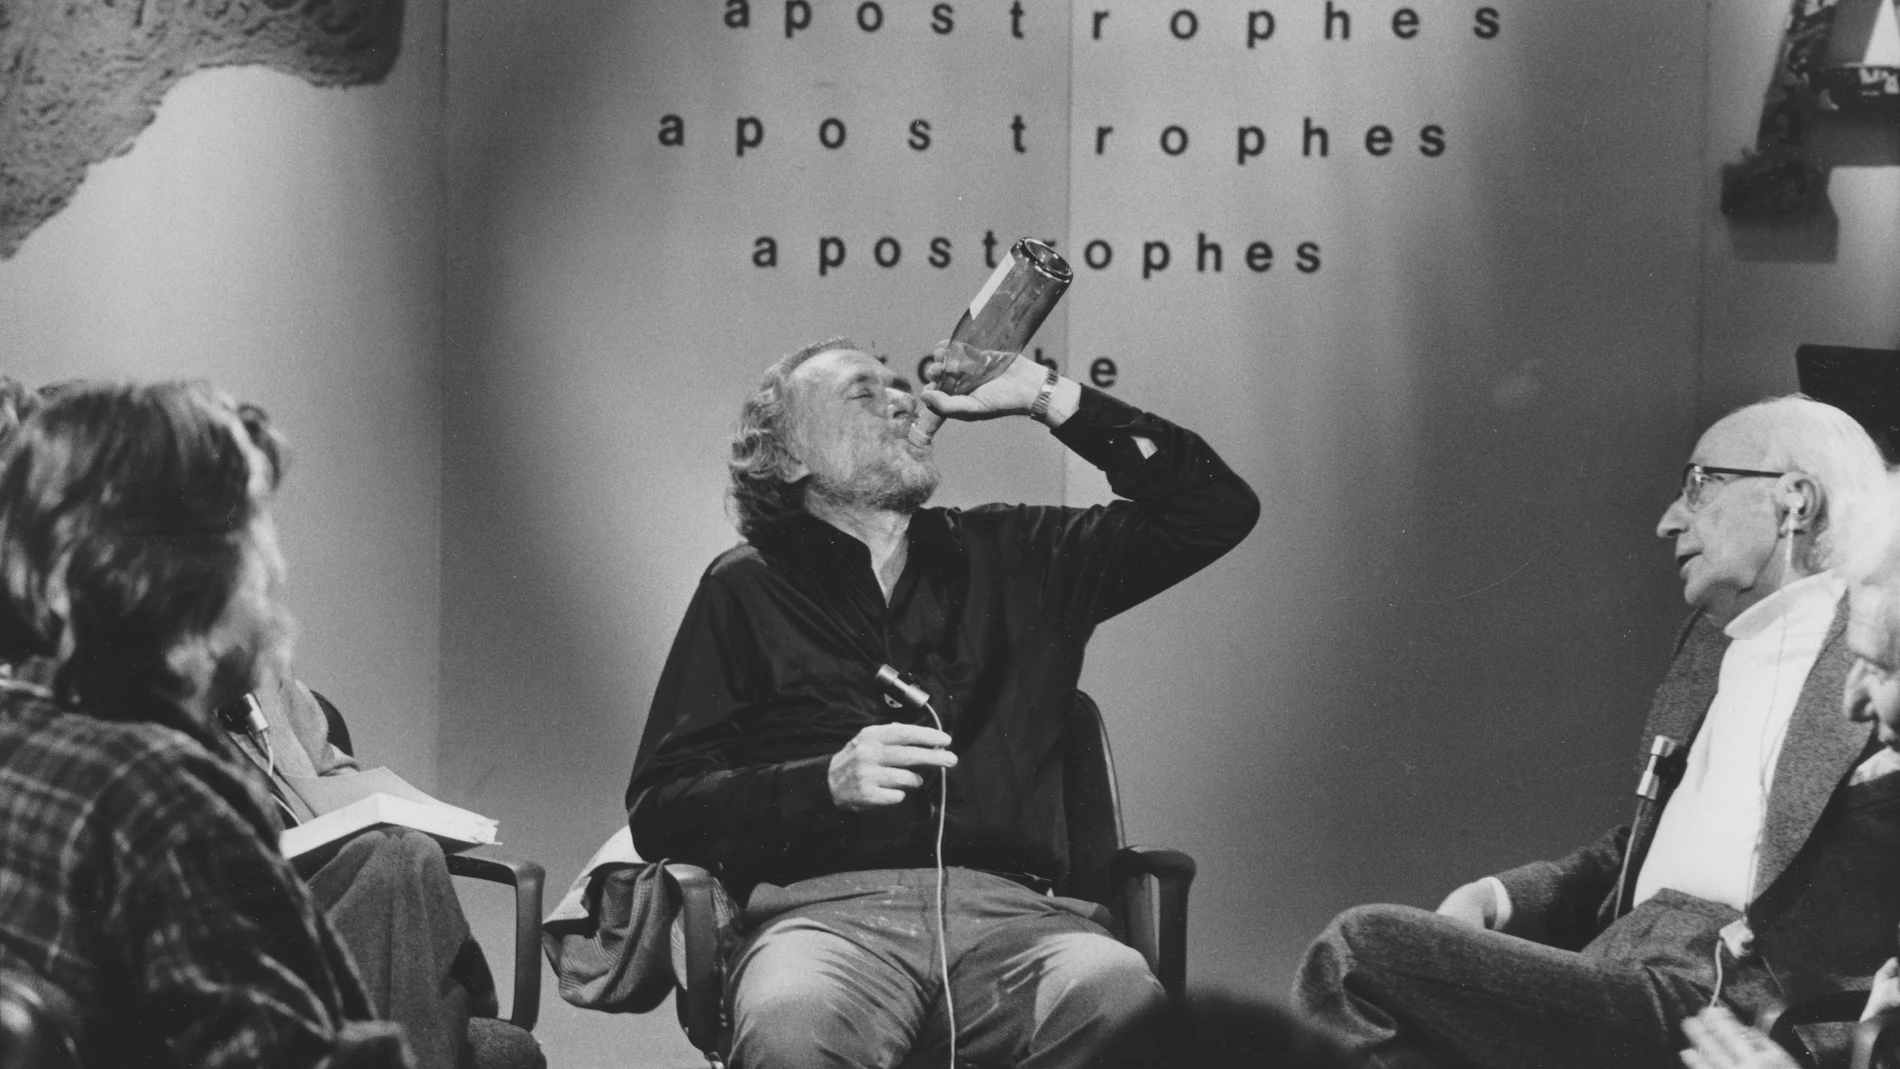 Charles Bukowski bebe en el set del Show "Les Apostrophes"